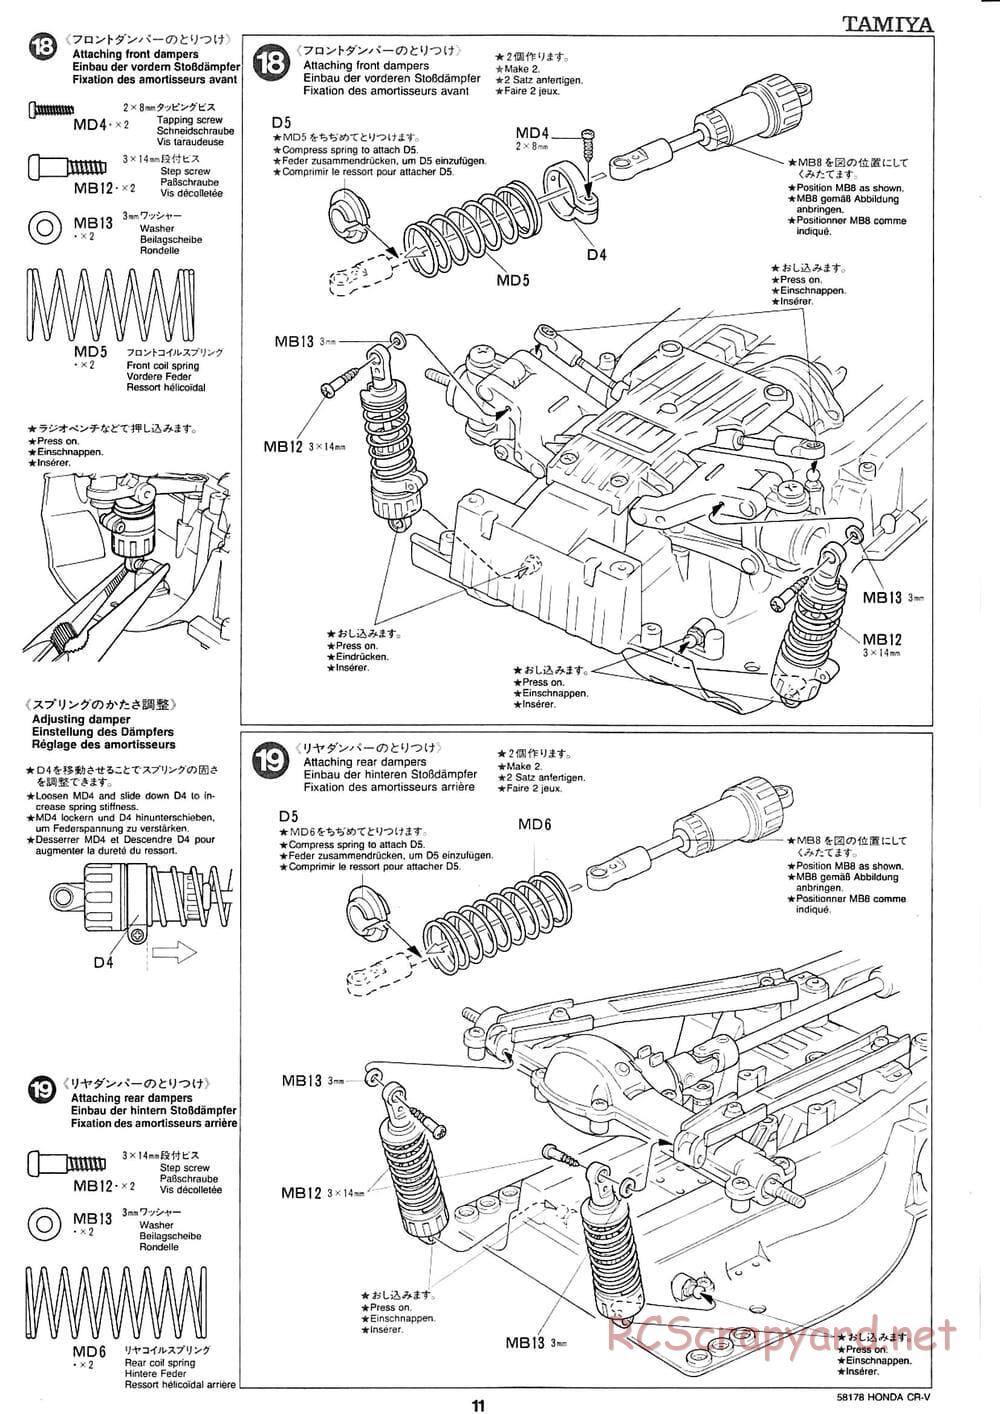 Tamiya - Honda CR-V - CC-01 Chassis - Manual - Page 11